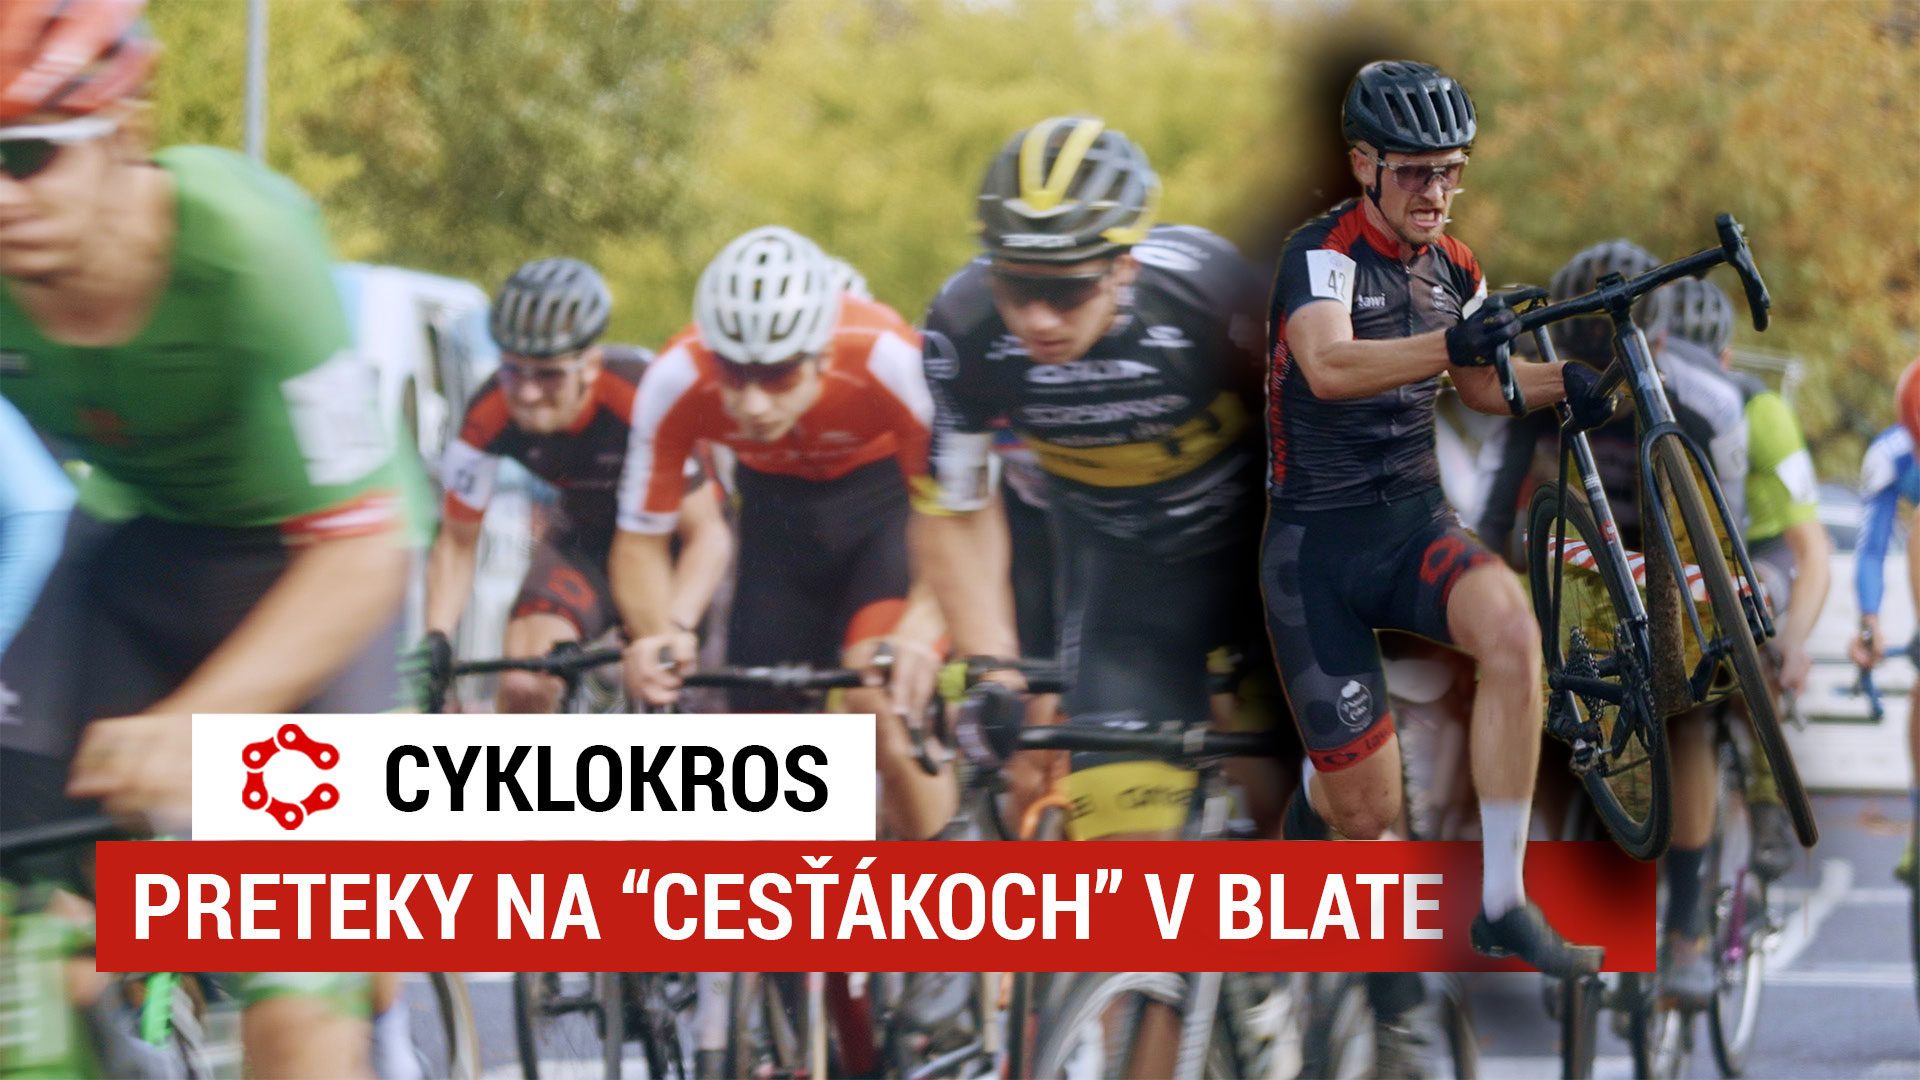 Cyklokros - preteky na "cesťákoch" v blate